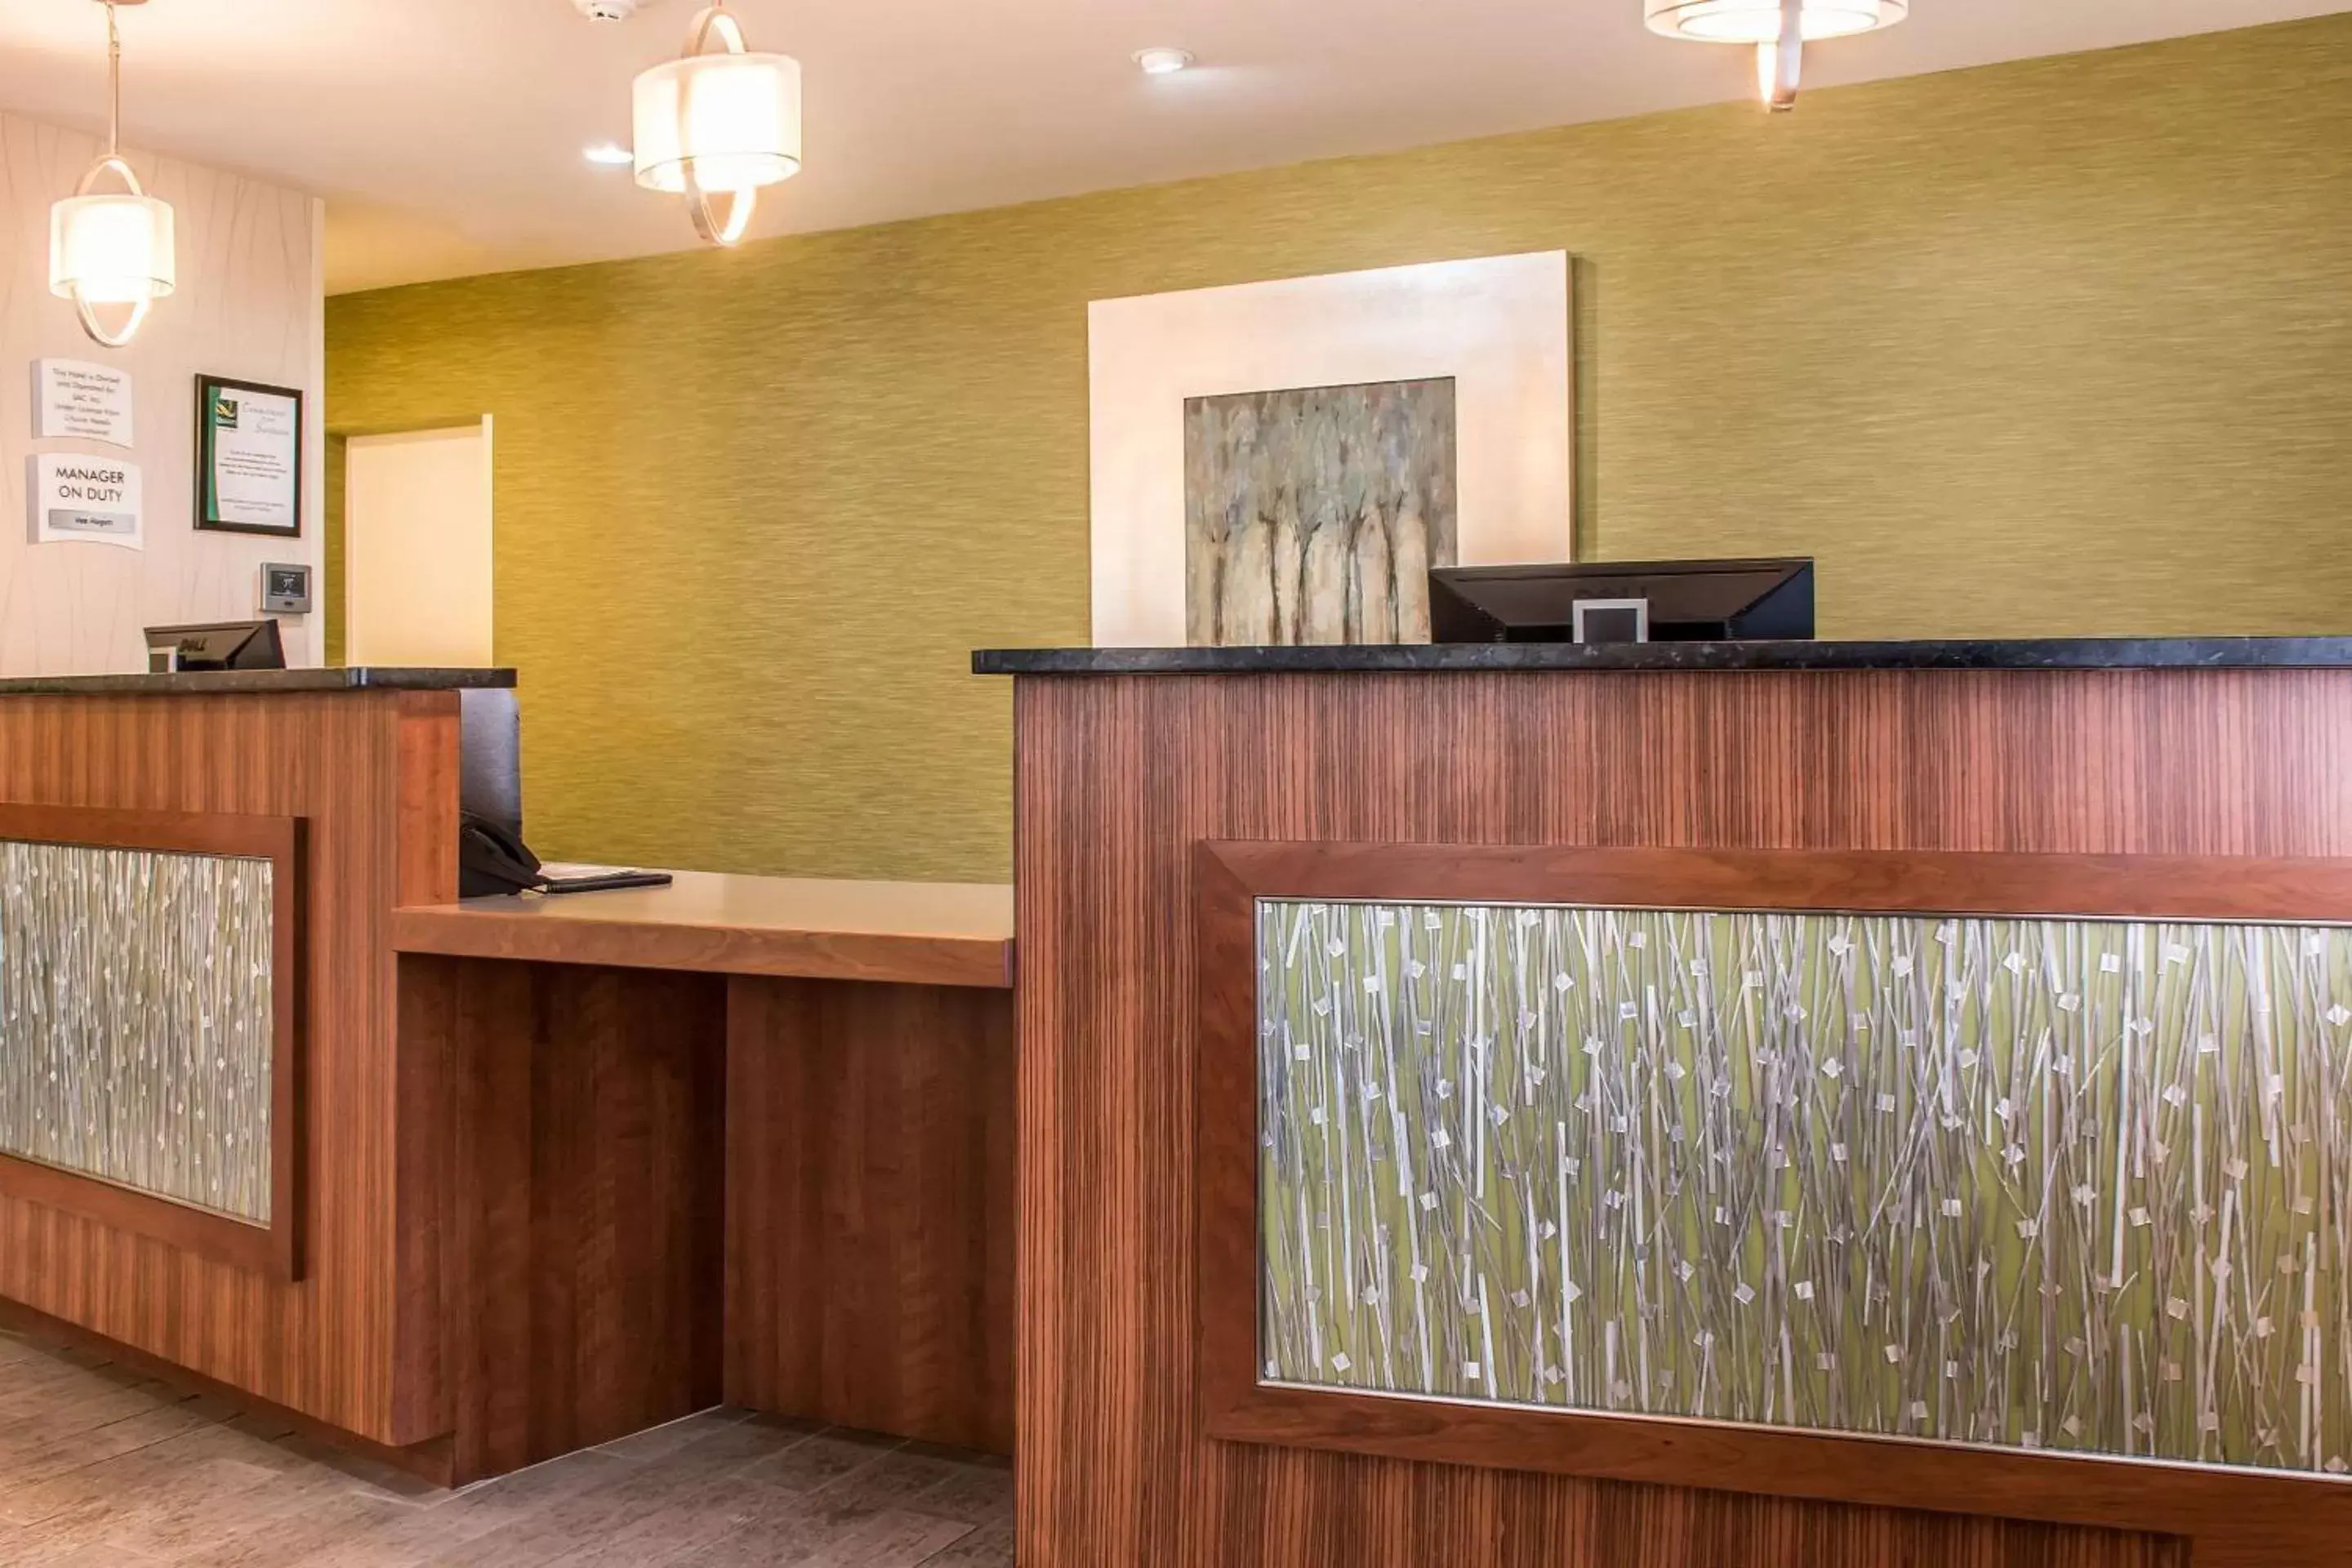 Lobby or reception, Lobby/Reception in Quality Inn Bedford